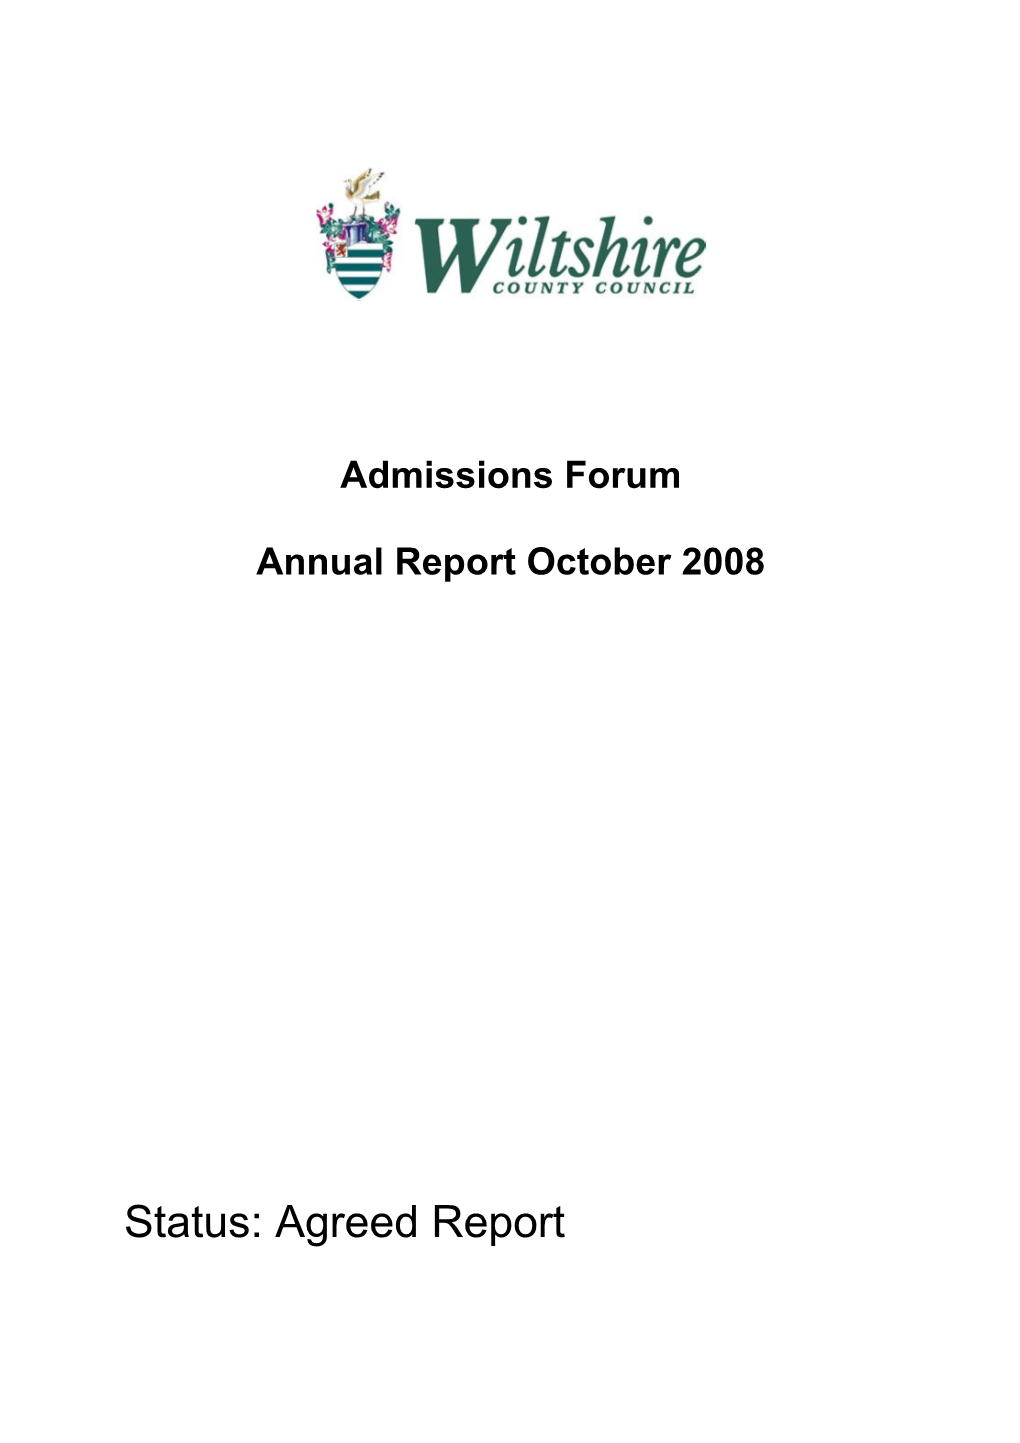 Wiltshire Admission Forum Annual Report 2008.Doc , Item 9. PDF 359 KB